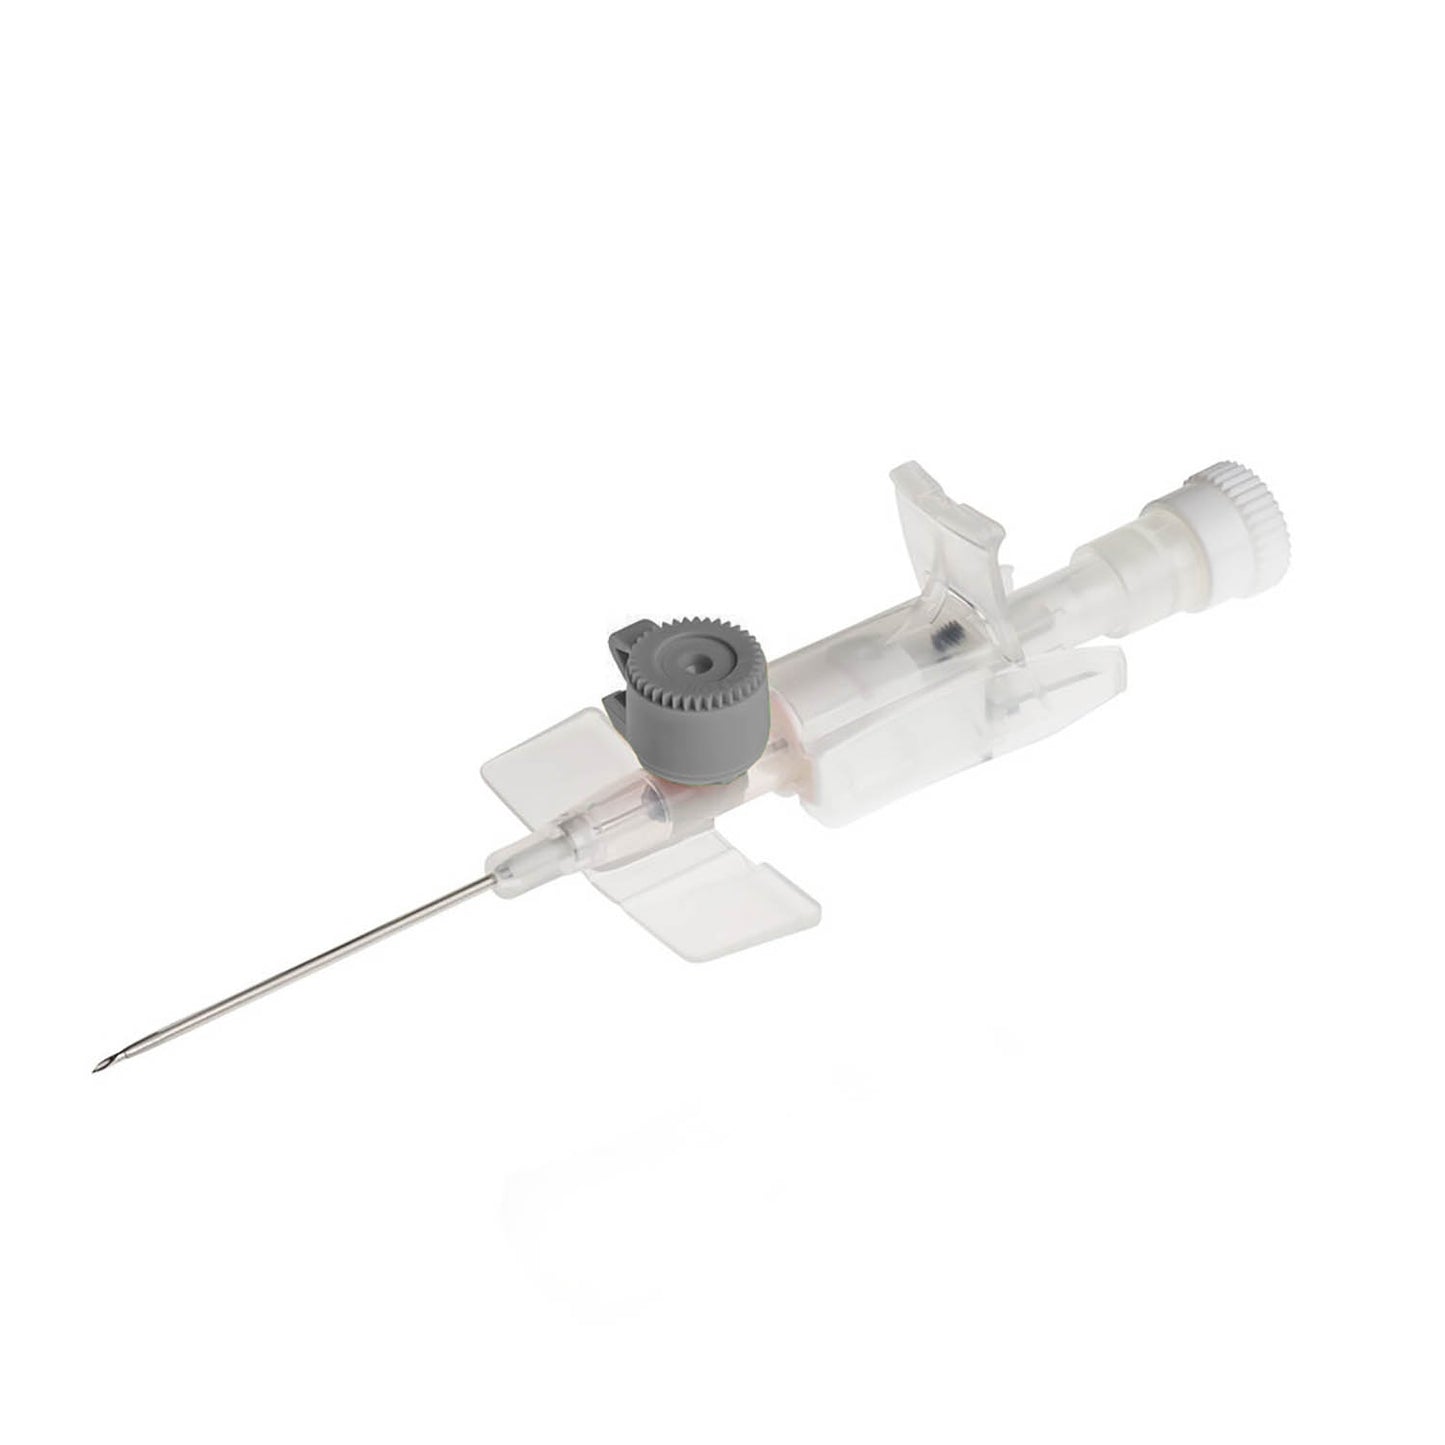 BD Venflon IV Catheter - 16g 45mm Ported & Winged x 50